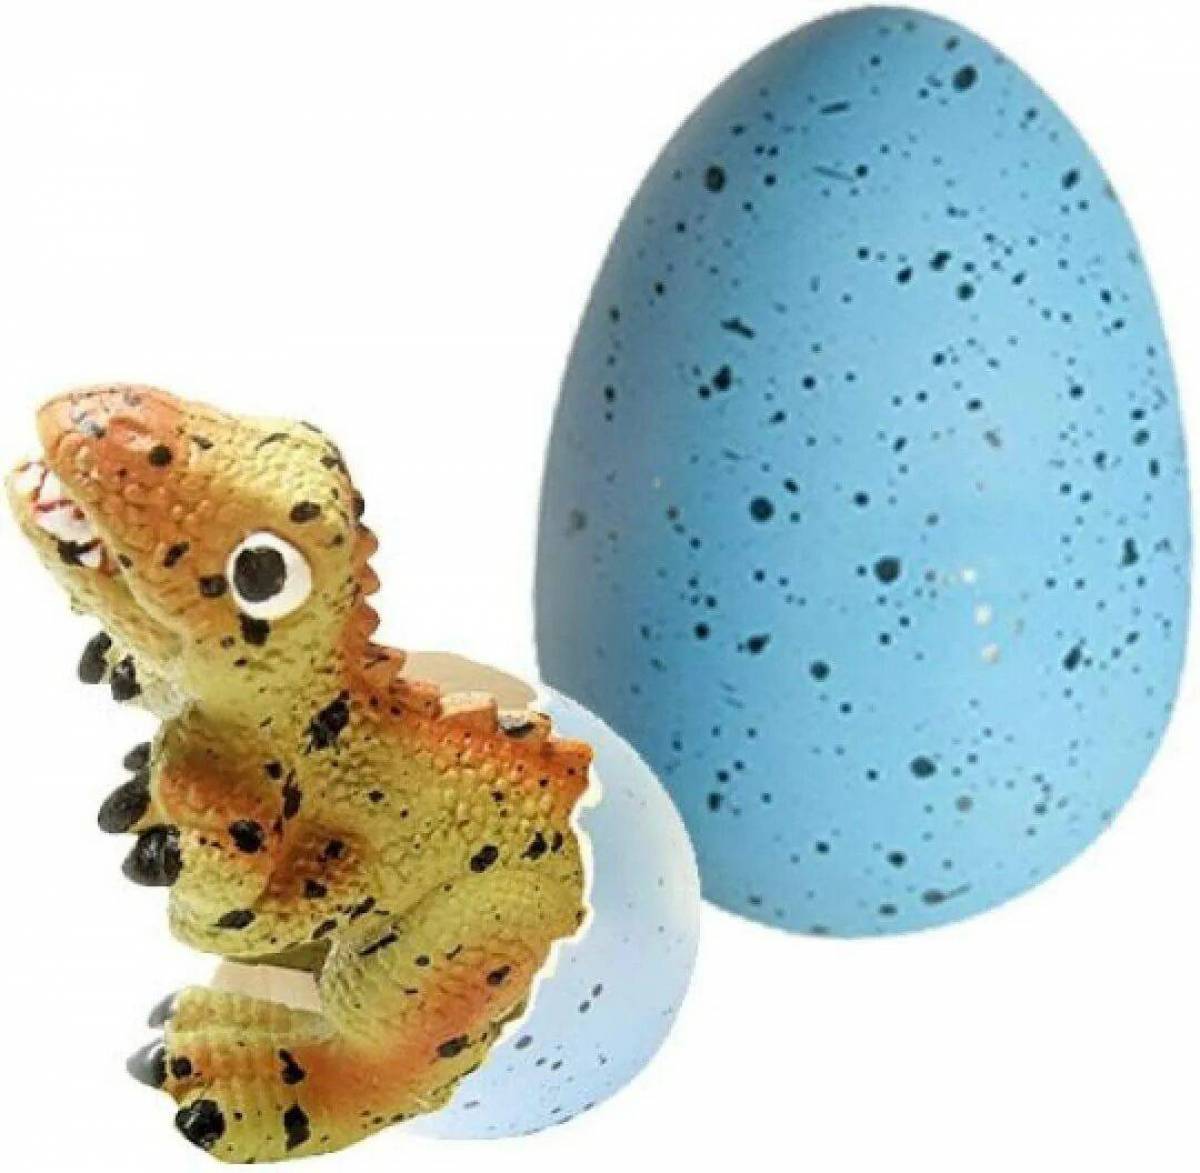 Игры и там яйца. Dinosaur Egg игрушка. Игрушка динозавр вылупляется из яйца. Яйцо из которого вылупляется динозавр. Динозавр с яйцом.